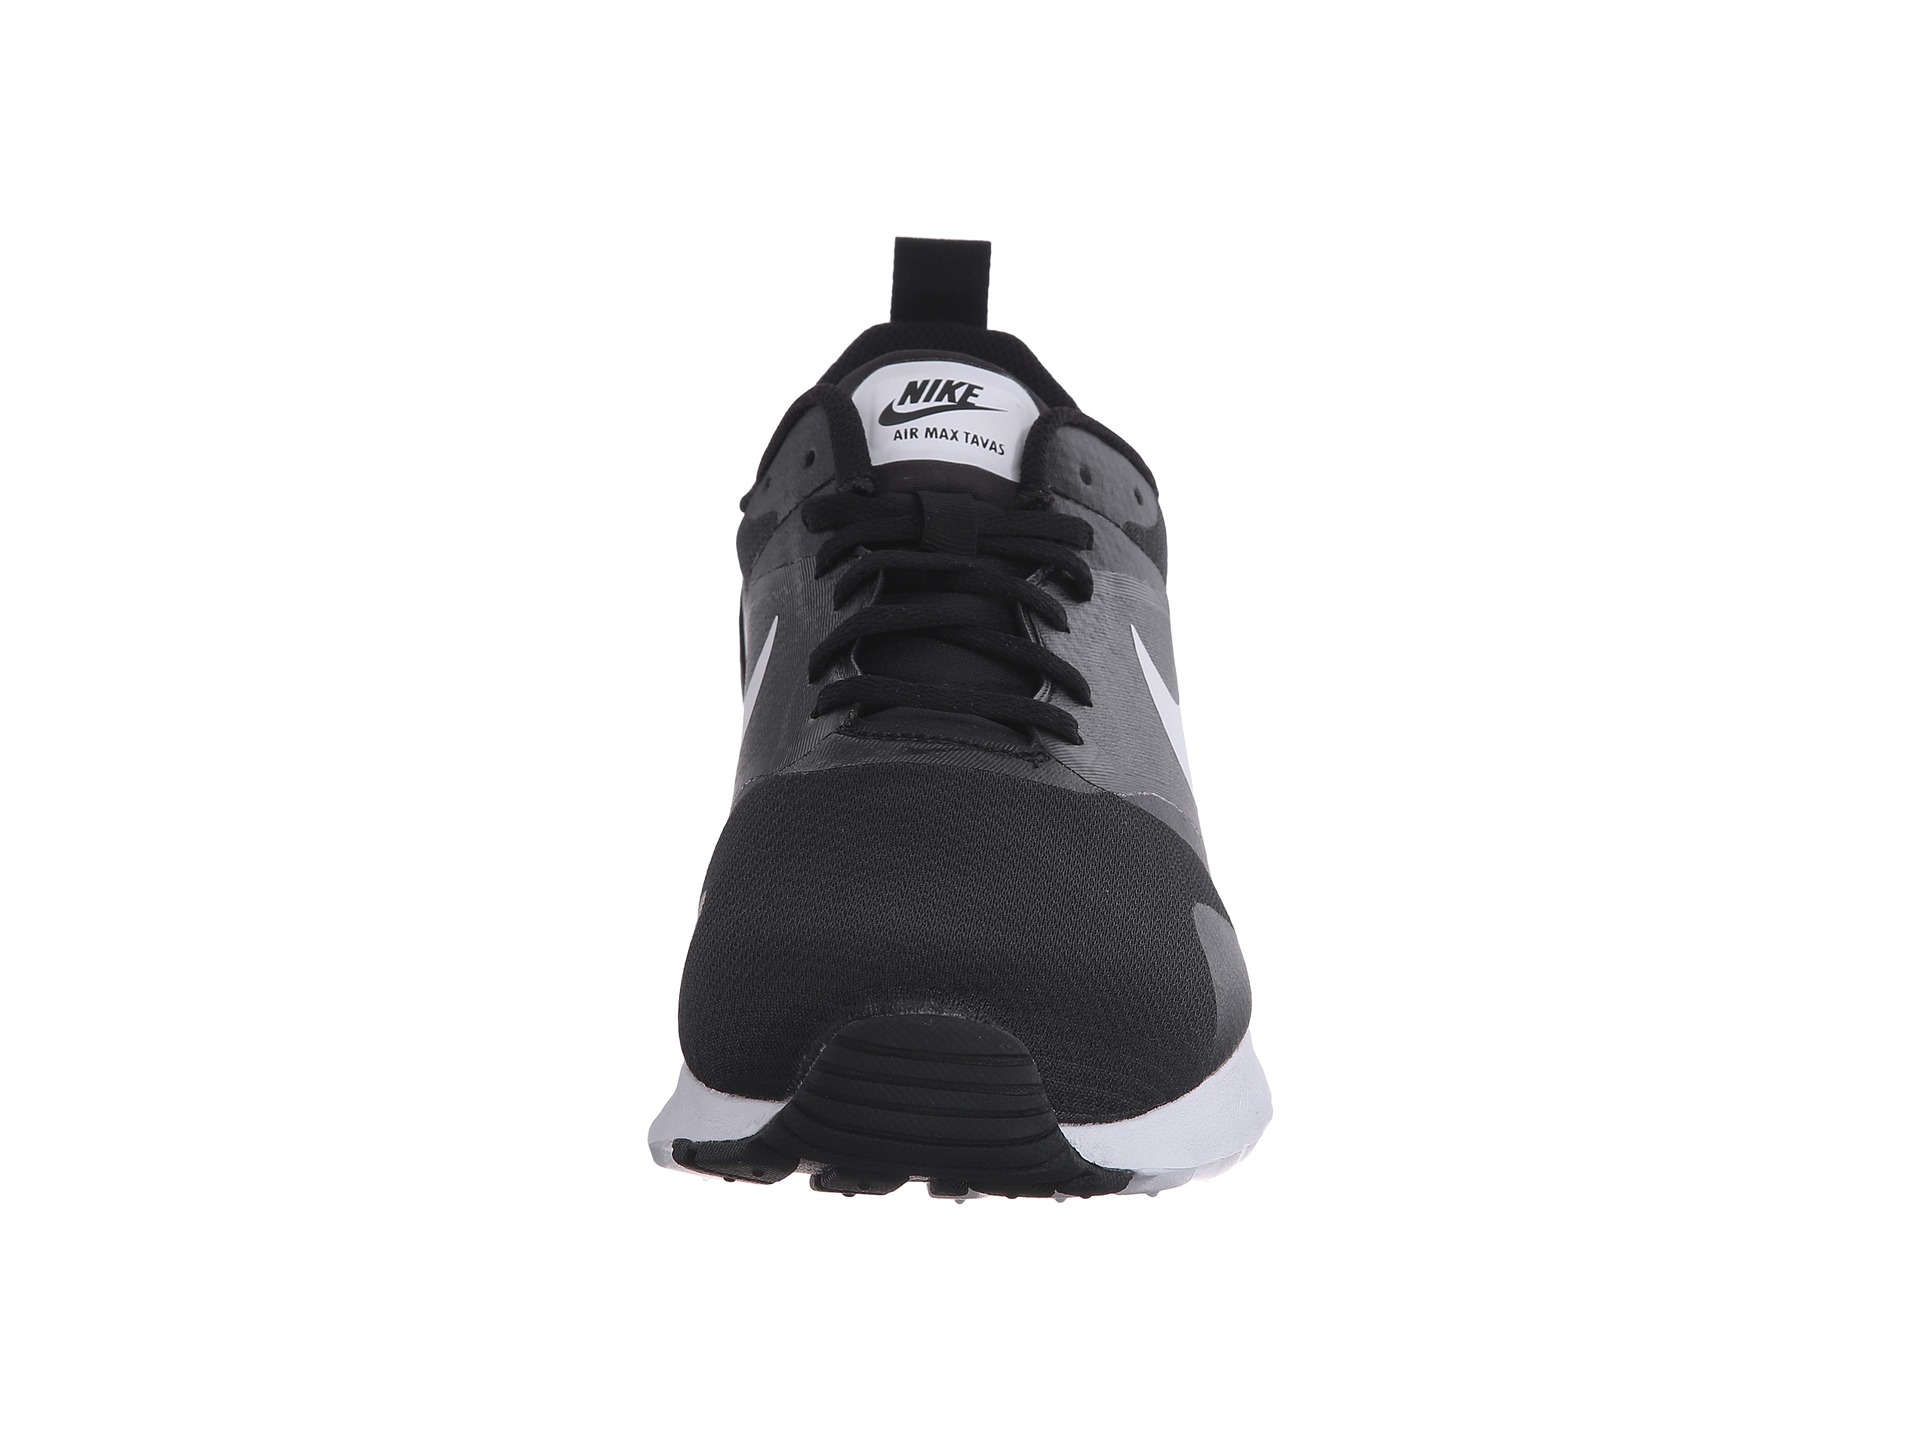 Nike Air Max Tavas Black/Black/White2 - Zappos.com Free Shipping BOTH Ways